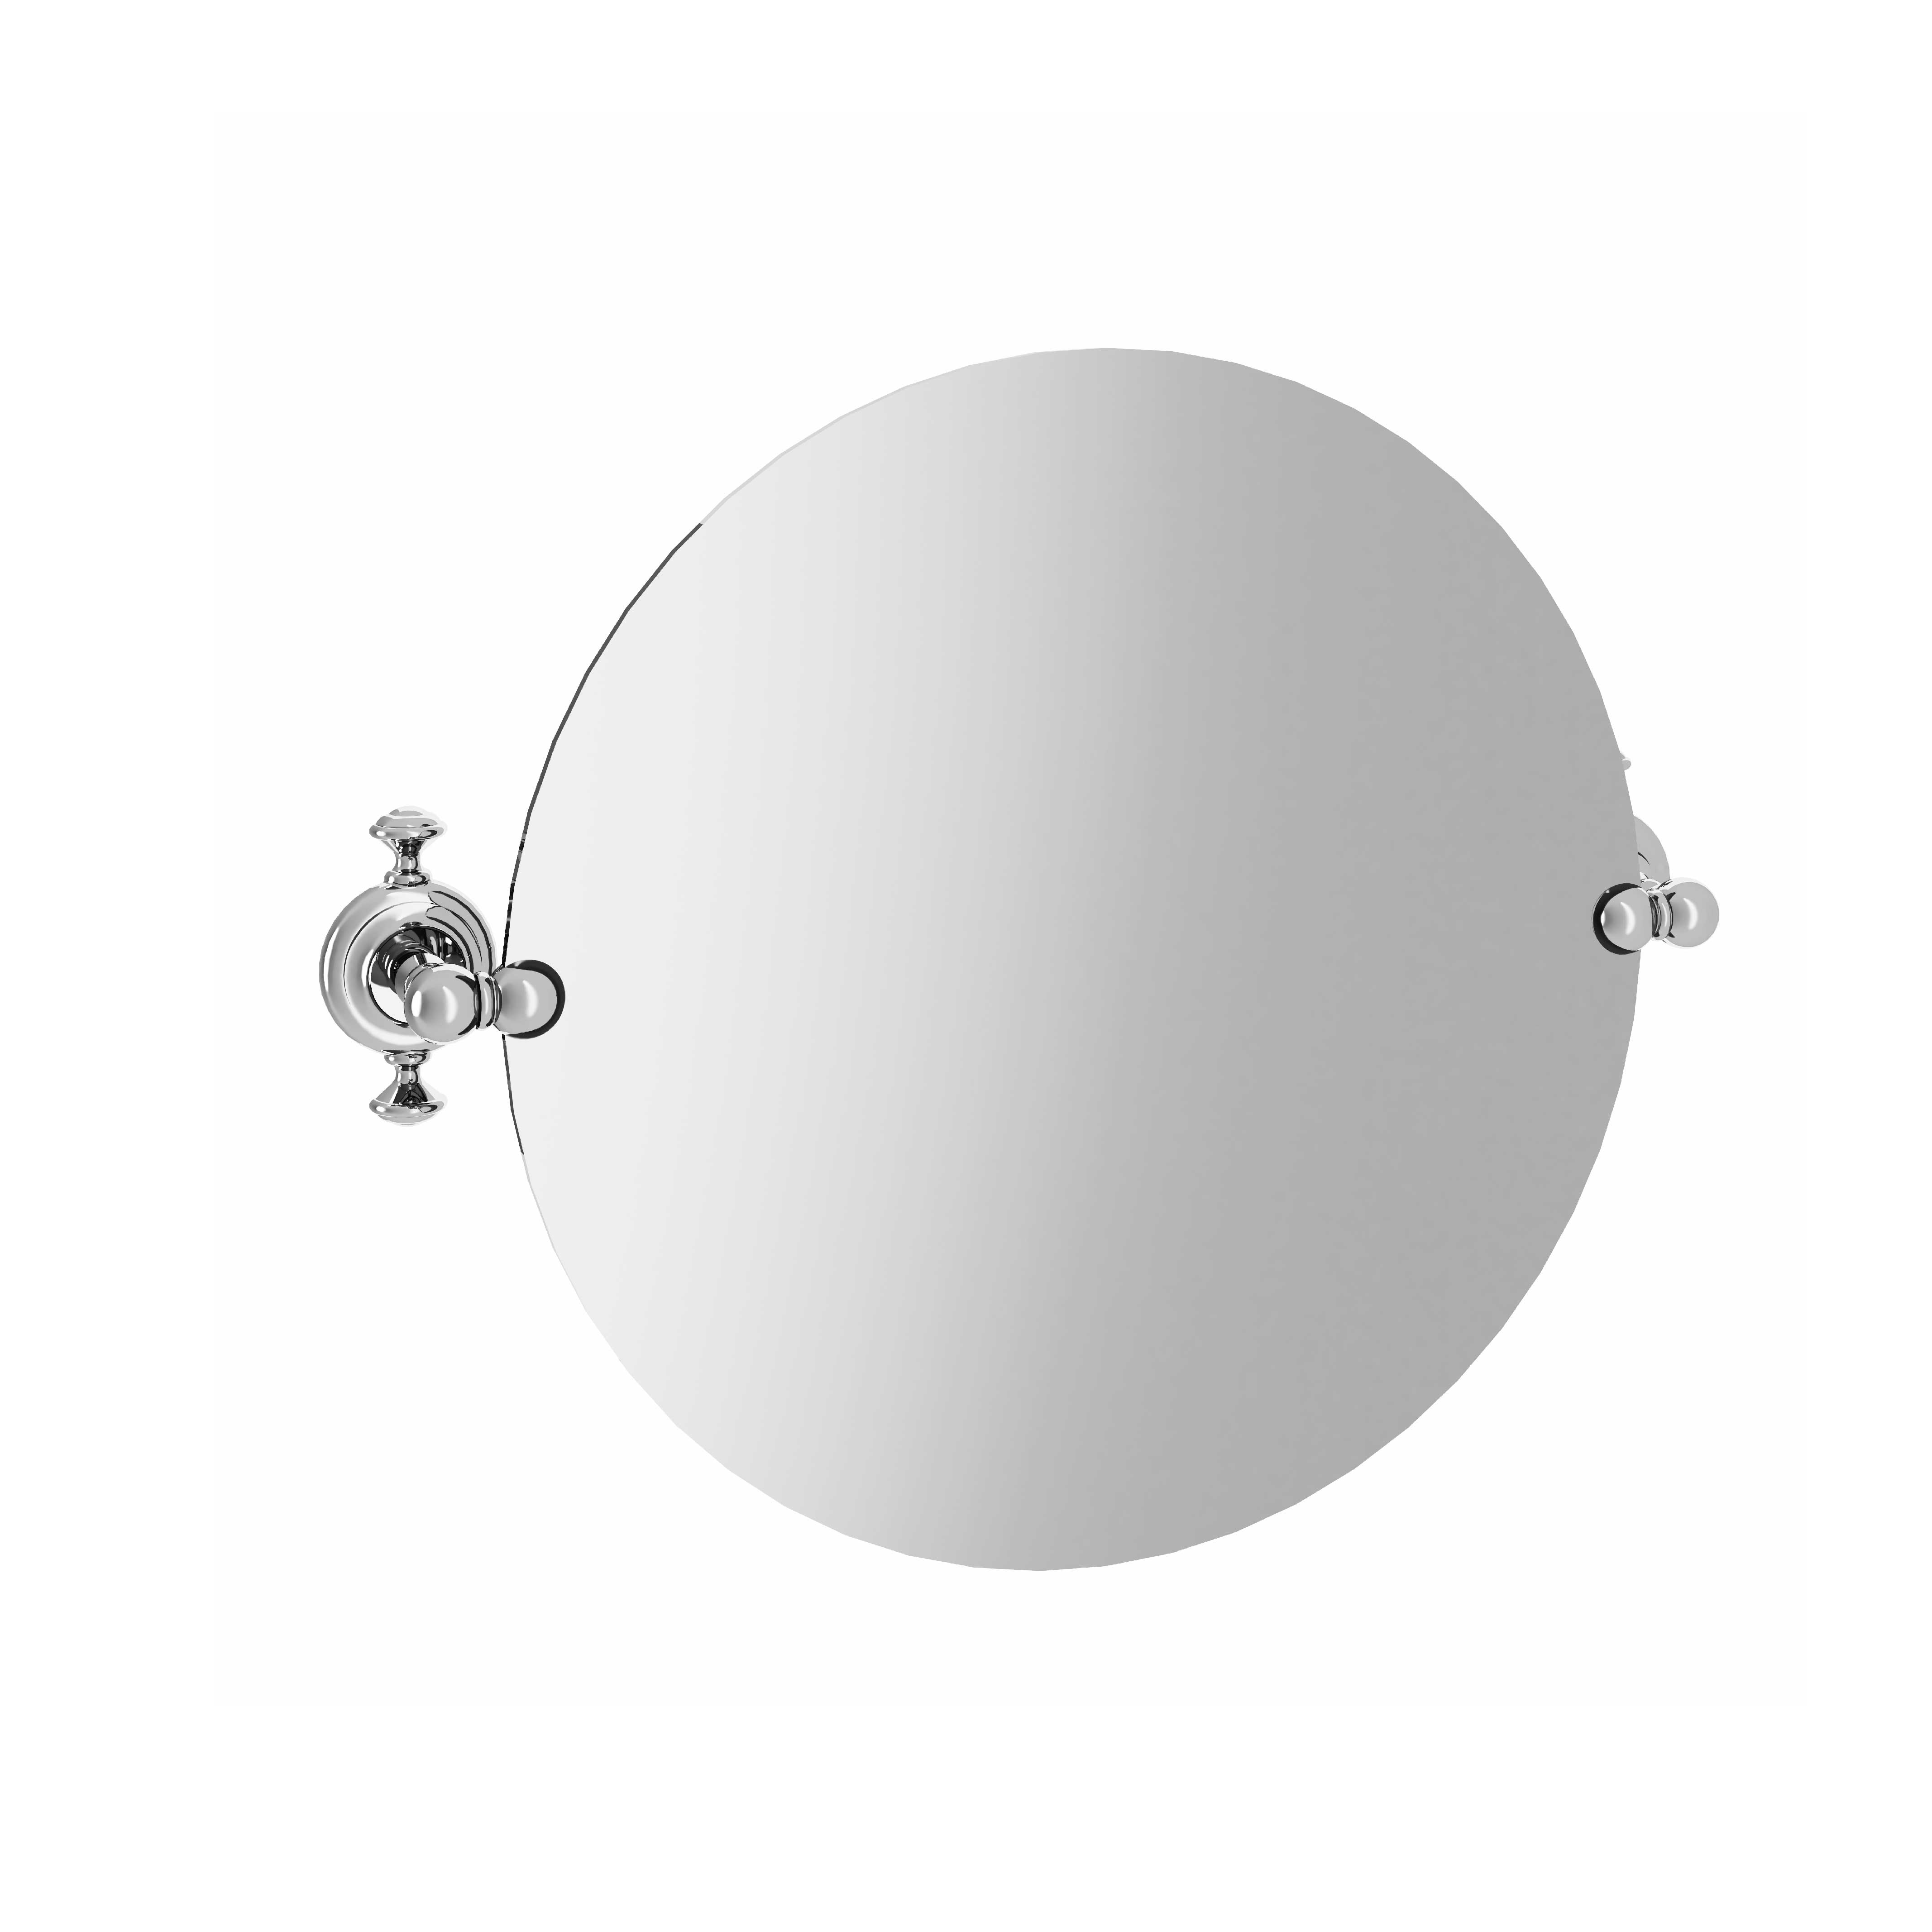 M01-536 Round mirror